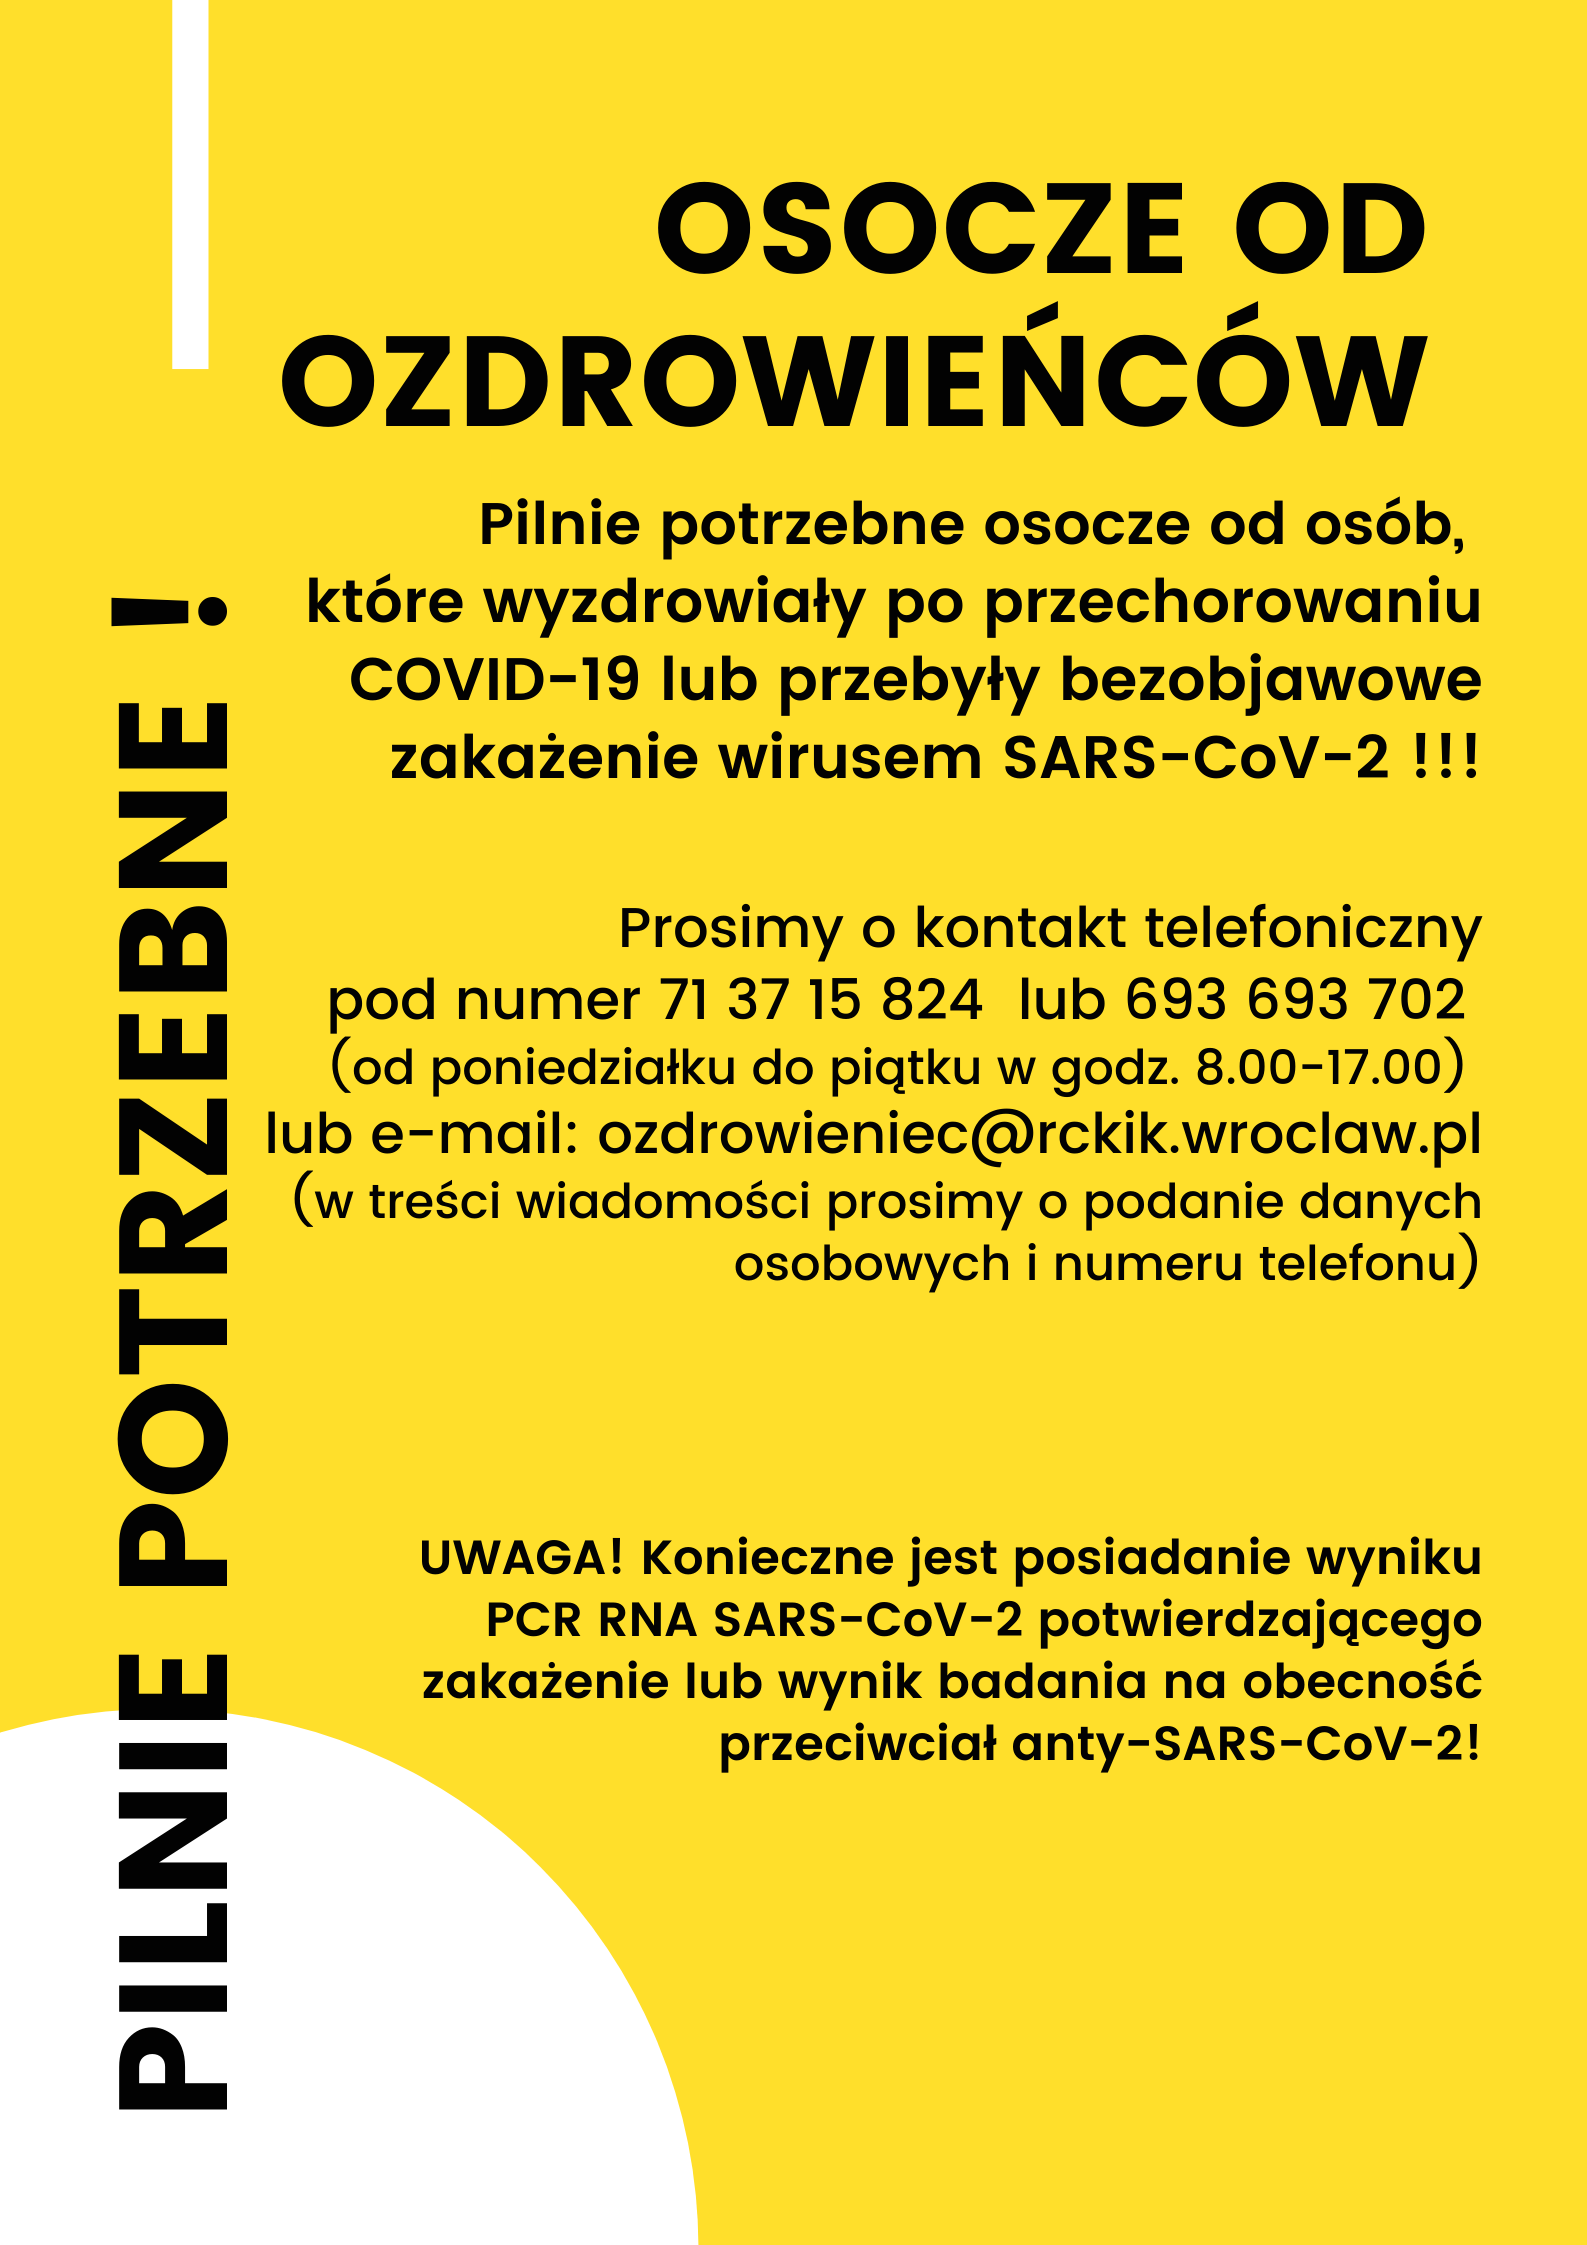 Regionalne Centrum Krwiodawstwa i Krwiolecznictwa we Wrocławiu zwraca się z gorącą prośbą do osób, które przeszły zakażenie SARS-CoV-2 o oddawanie osocza.